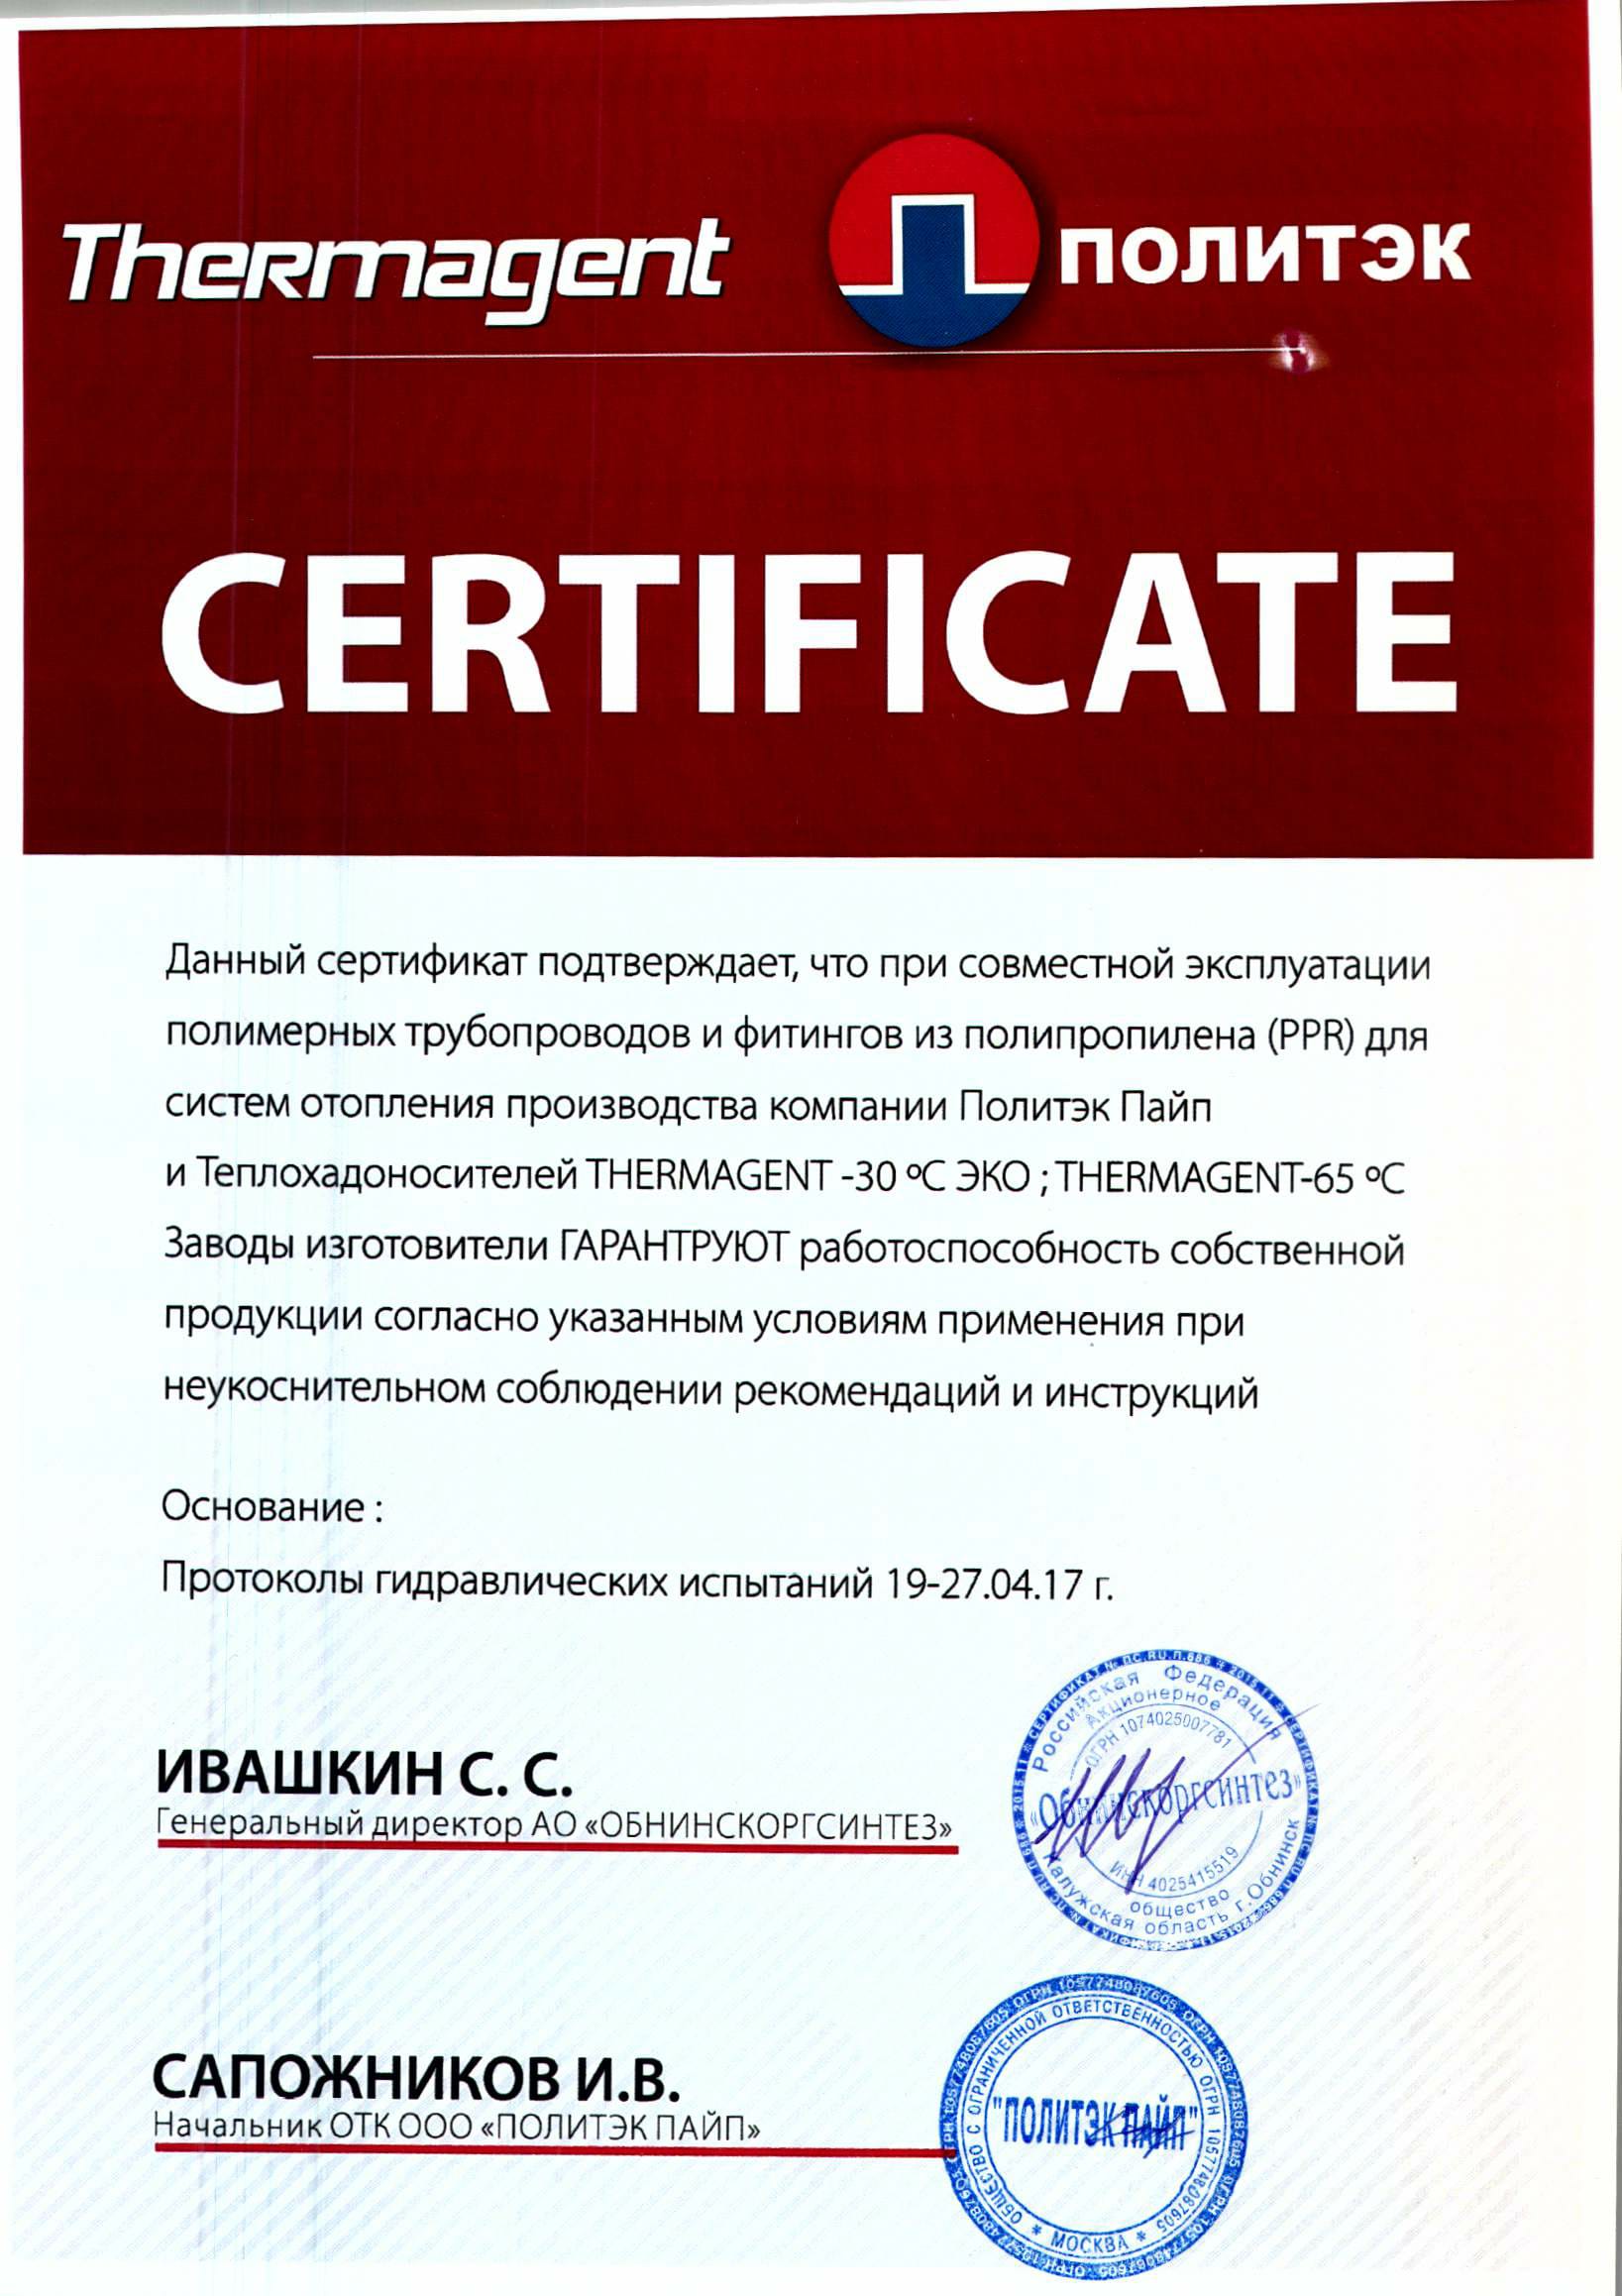 Сертификат о совместной эксплуатации с теплохладоносителем THERMAGENT